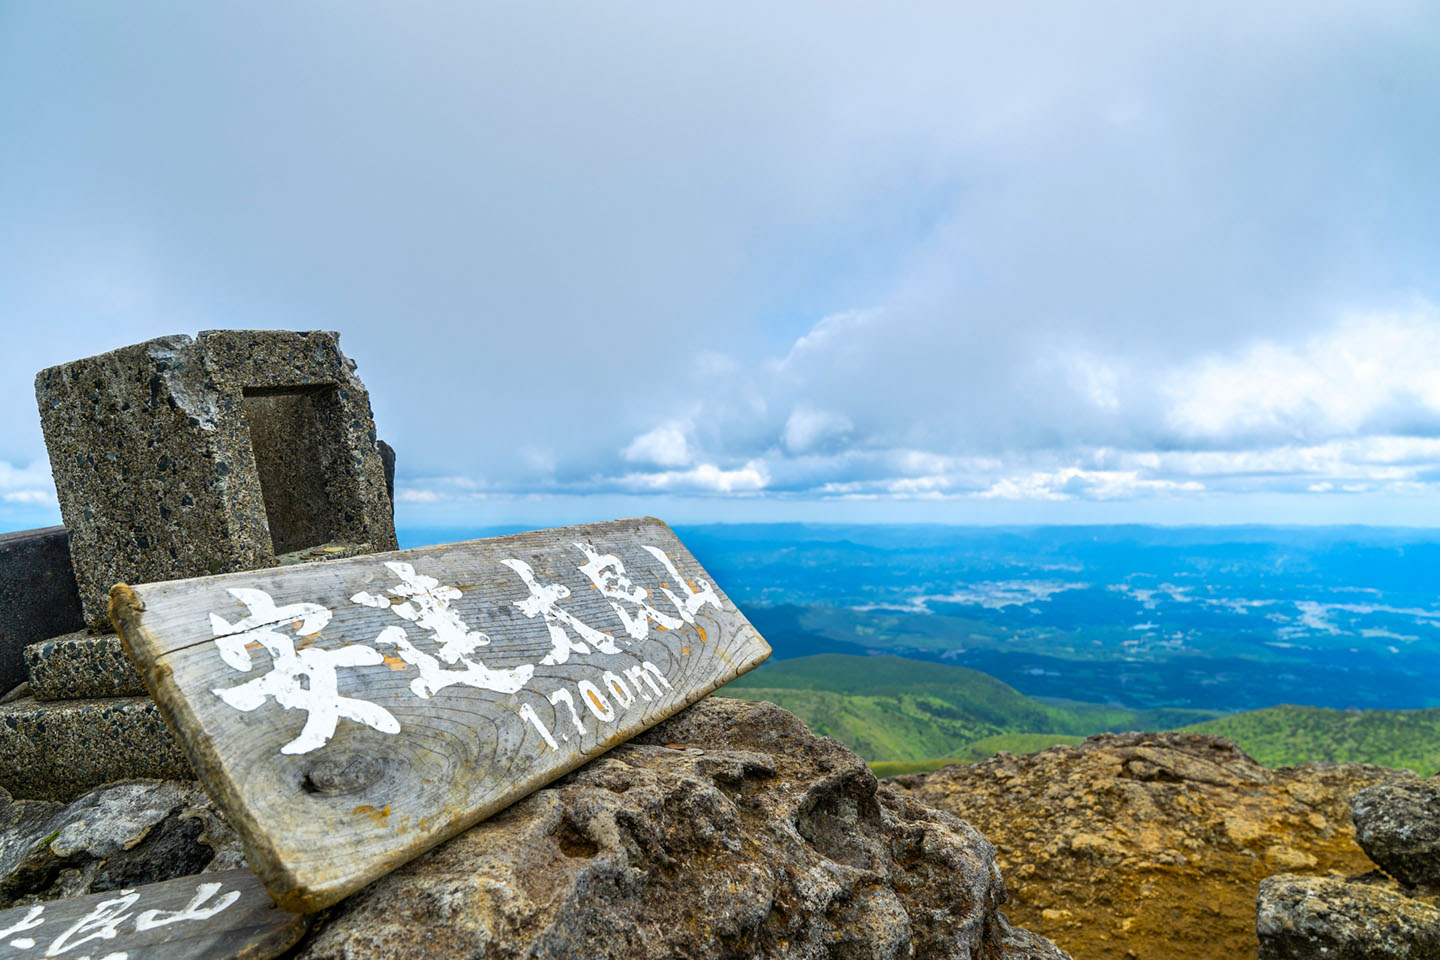 Hiking Mt. Adatara Top 100 Mountains in Japan